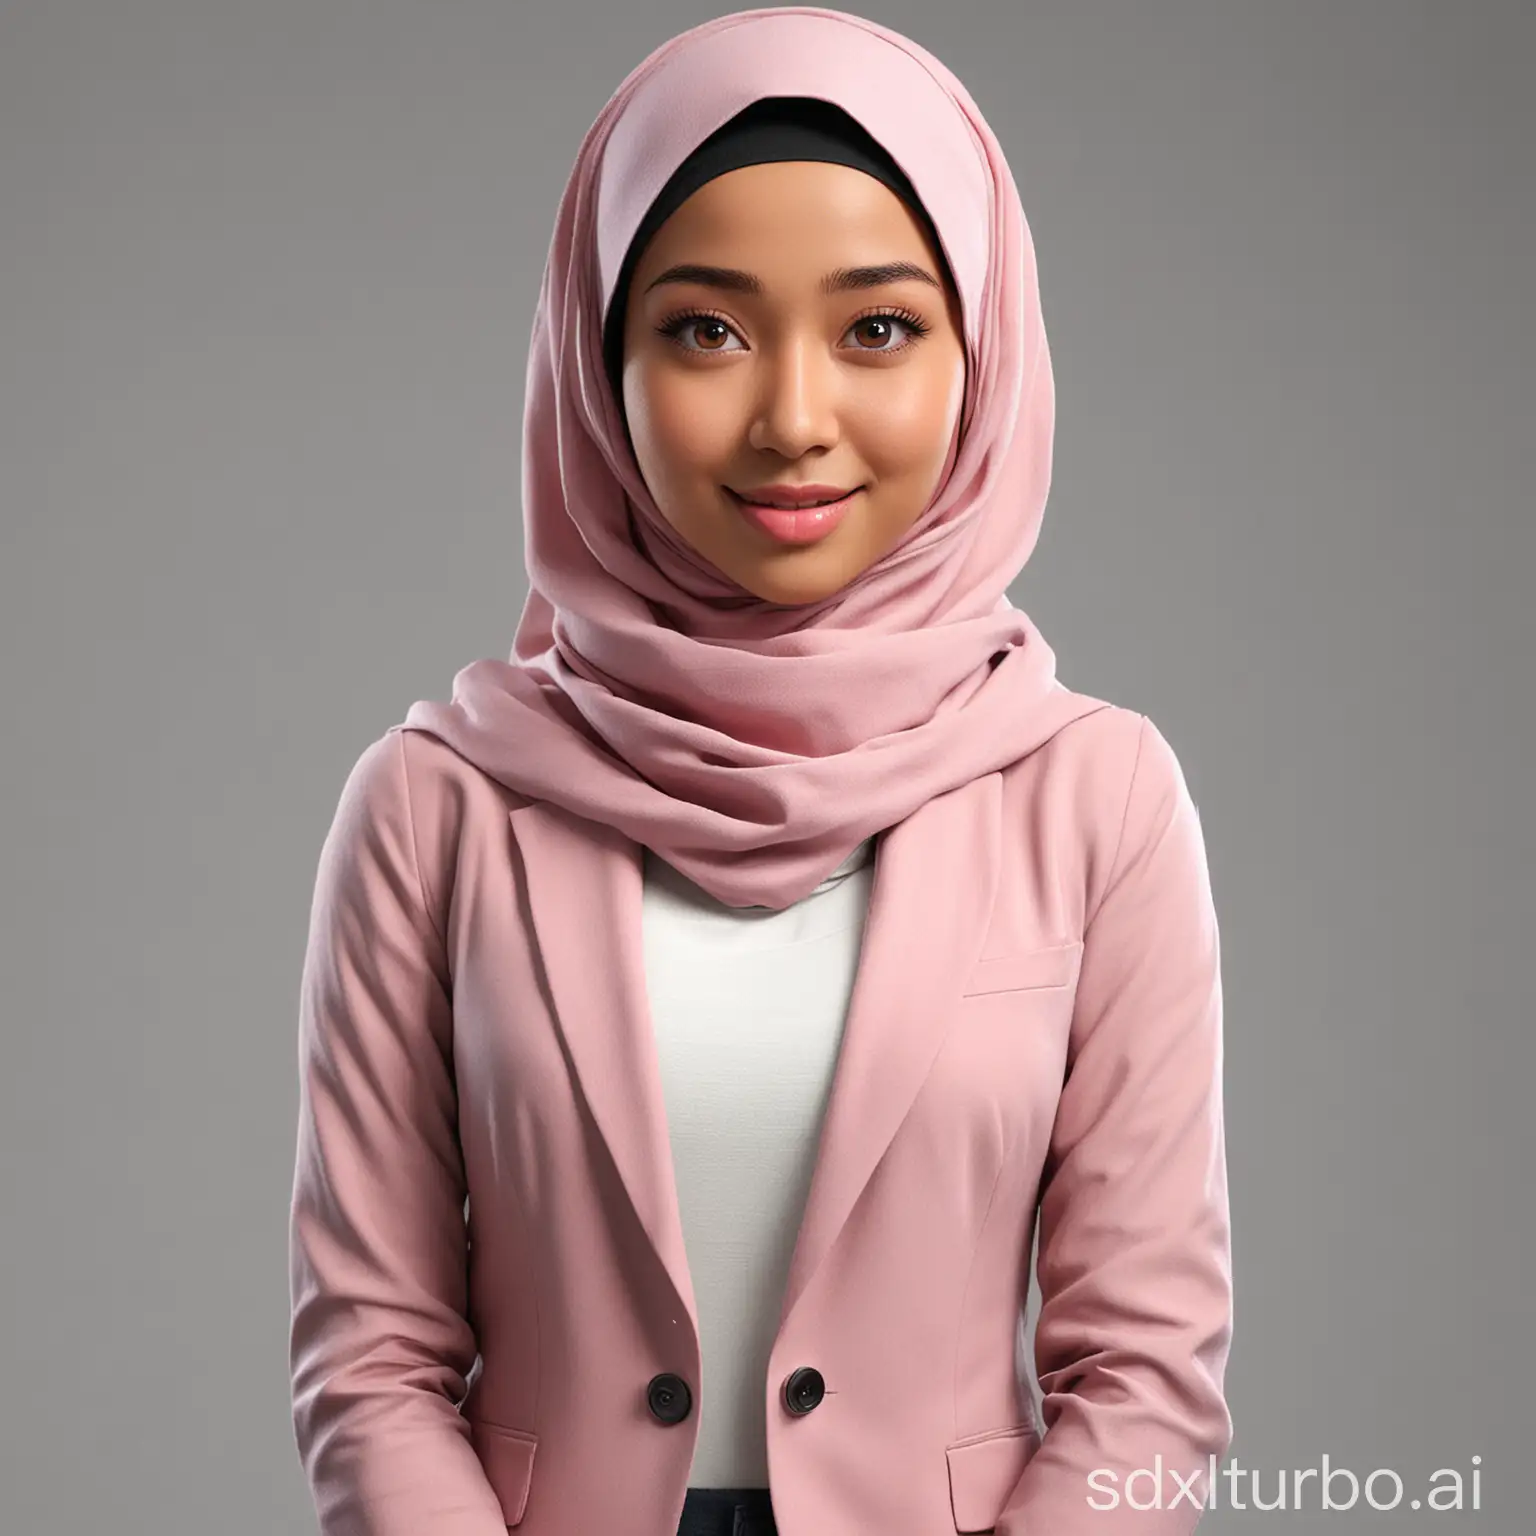 Indonesian-Woman-in-Hijab-Tall-Graceful-3D-Cartoon-Portrait